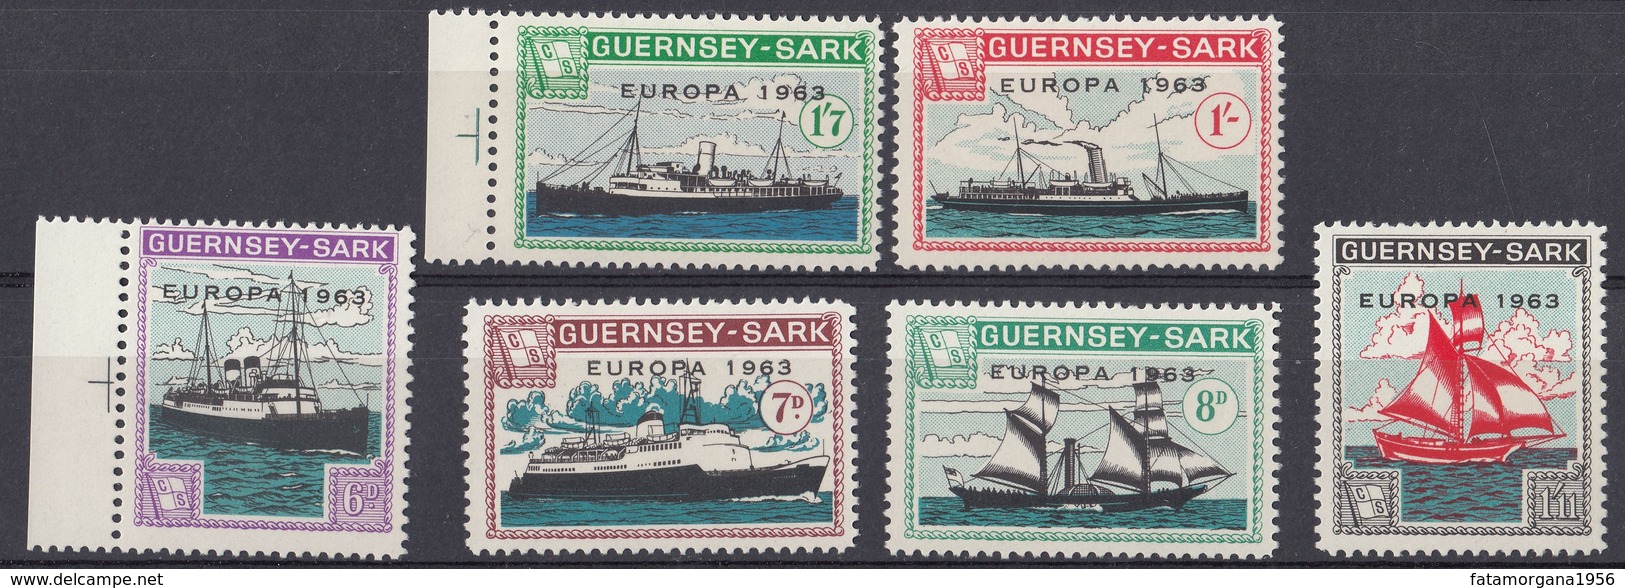 GUERNSEY Local Mail To SARK - 1963 - Europa - Serie Completa Di 6 Valori MNH Con Margini Di Foglio, Come Da Immagine. - Guernesey